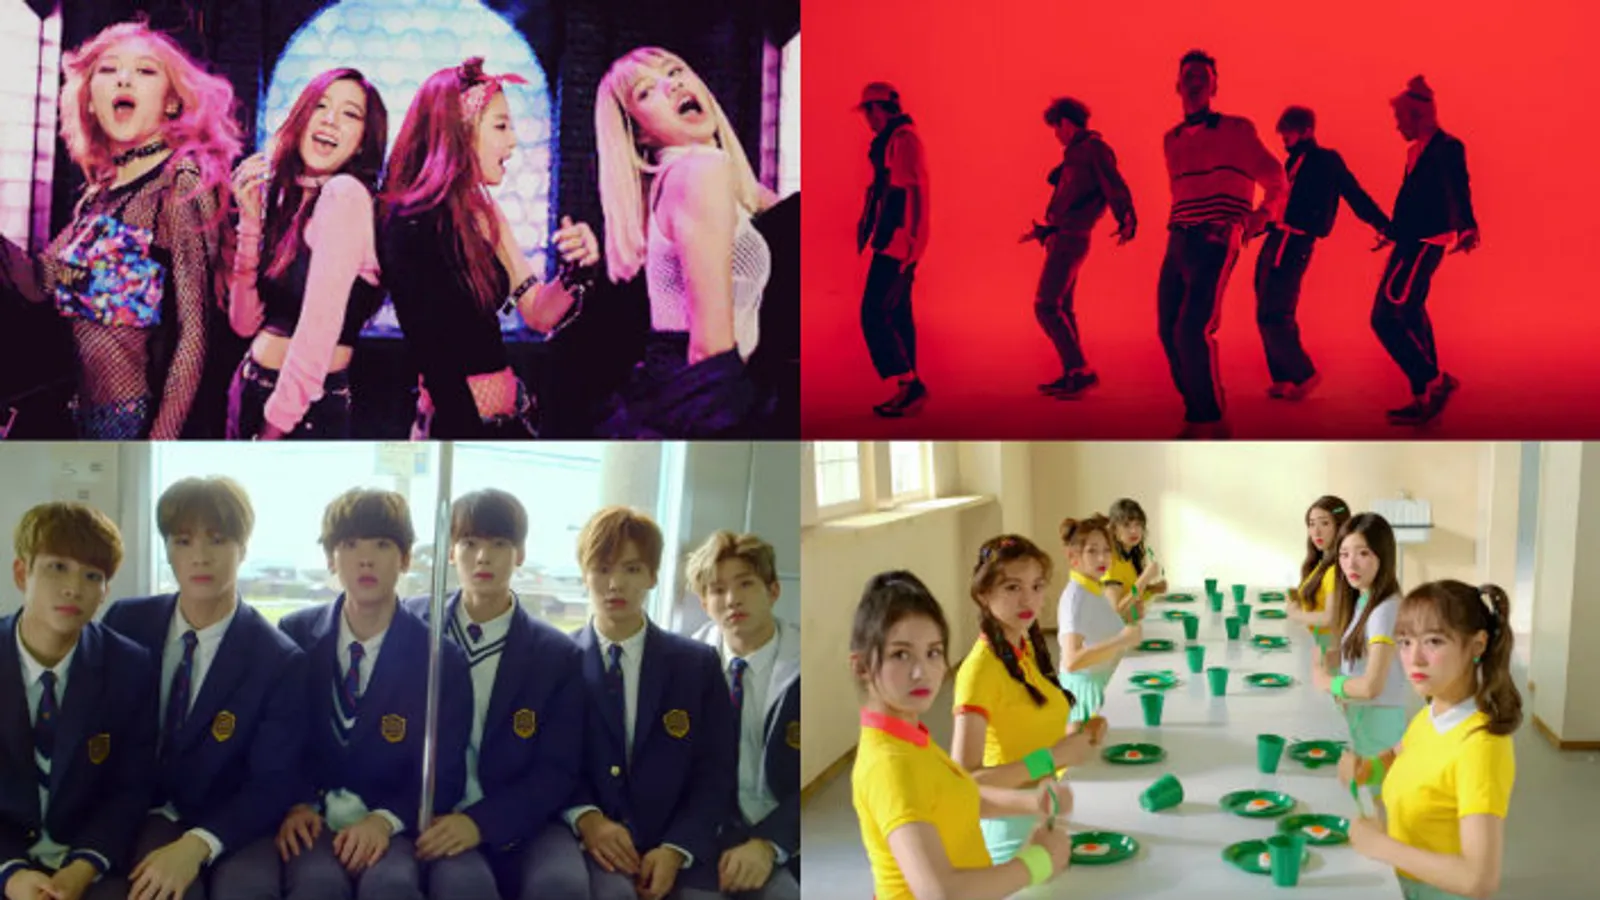 10 Group K-Pop Terfavorit Pilihan Para Penggemar di Seluruh Dunia